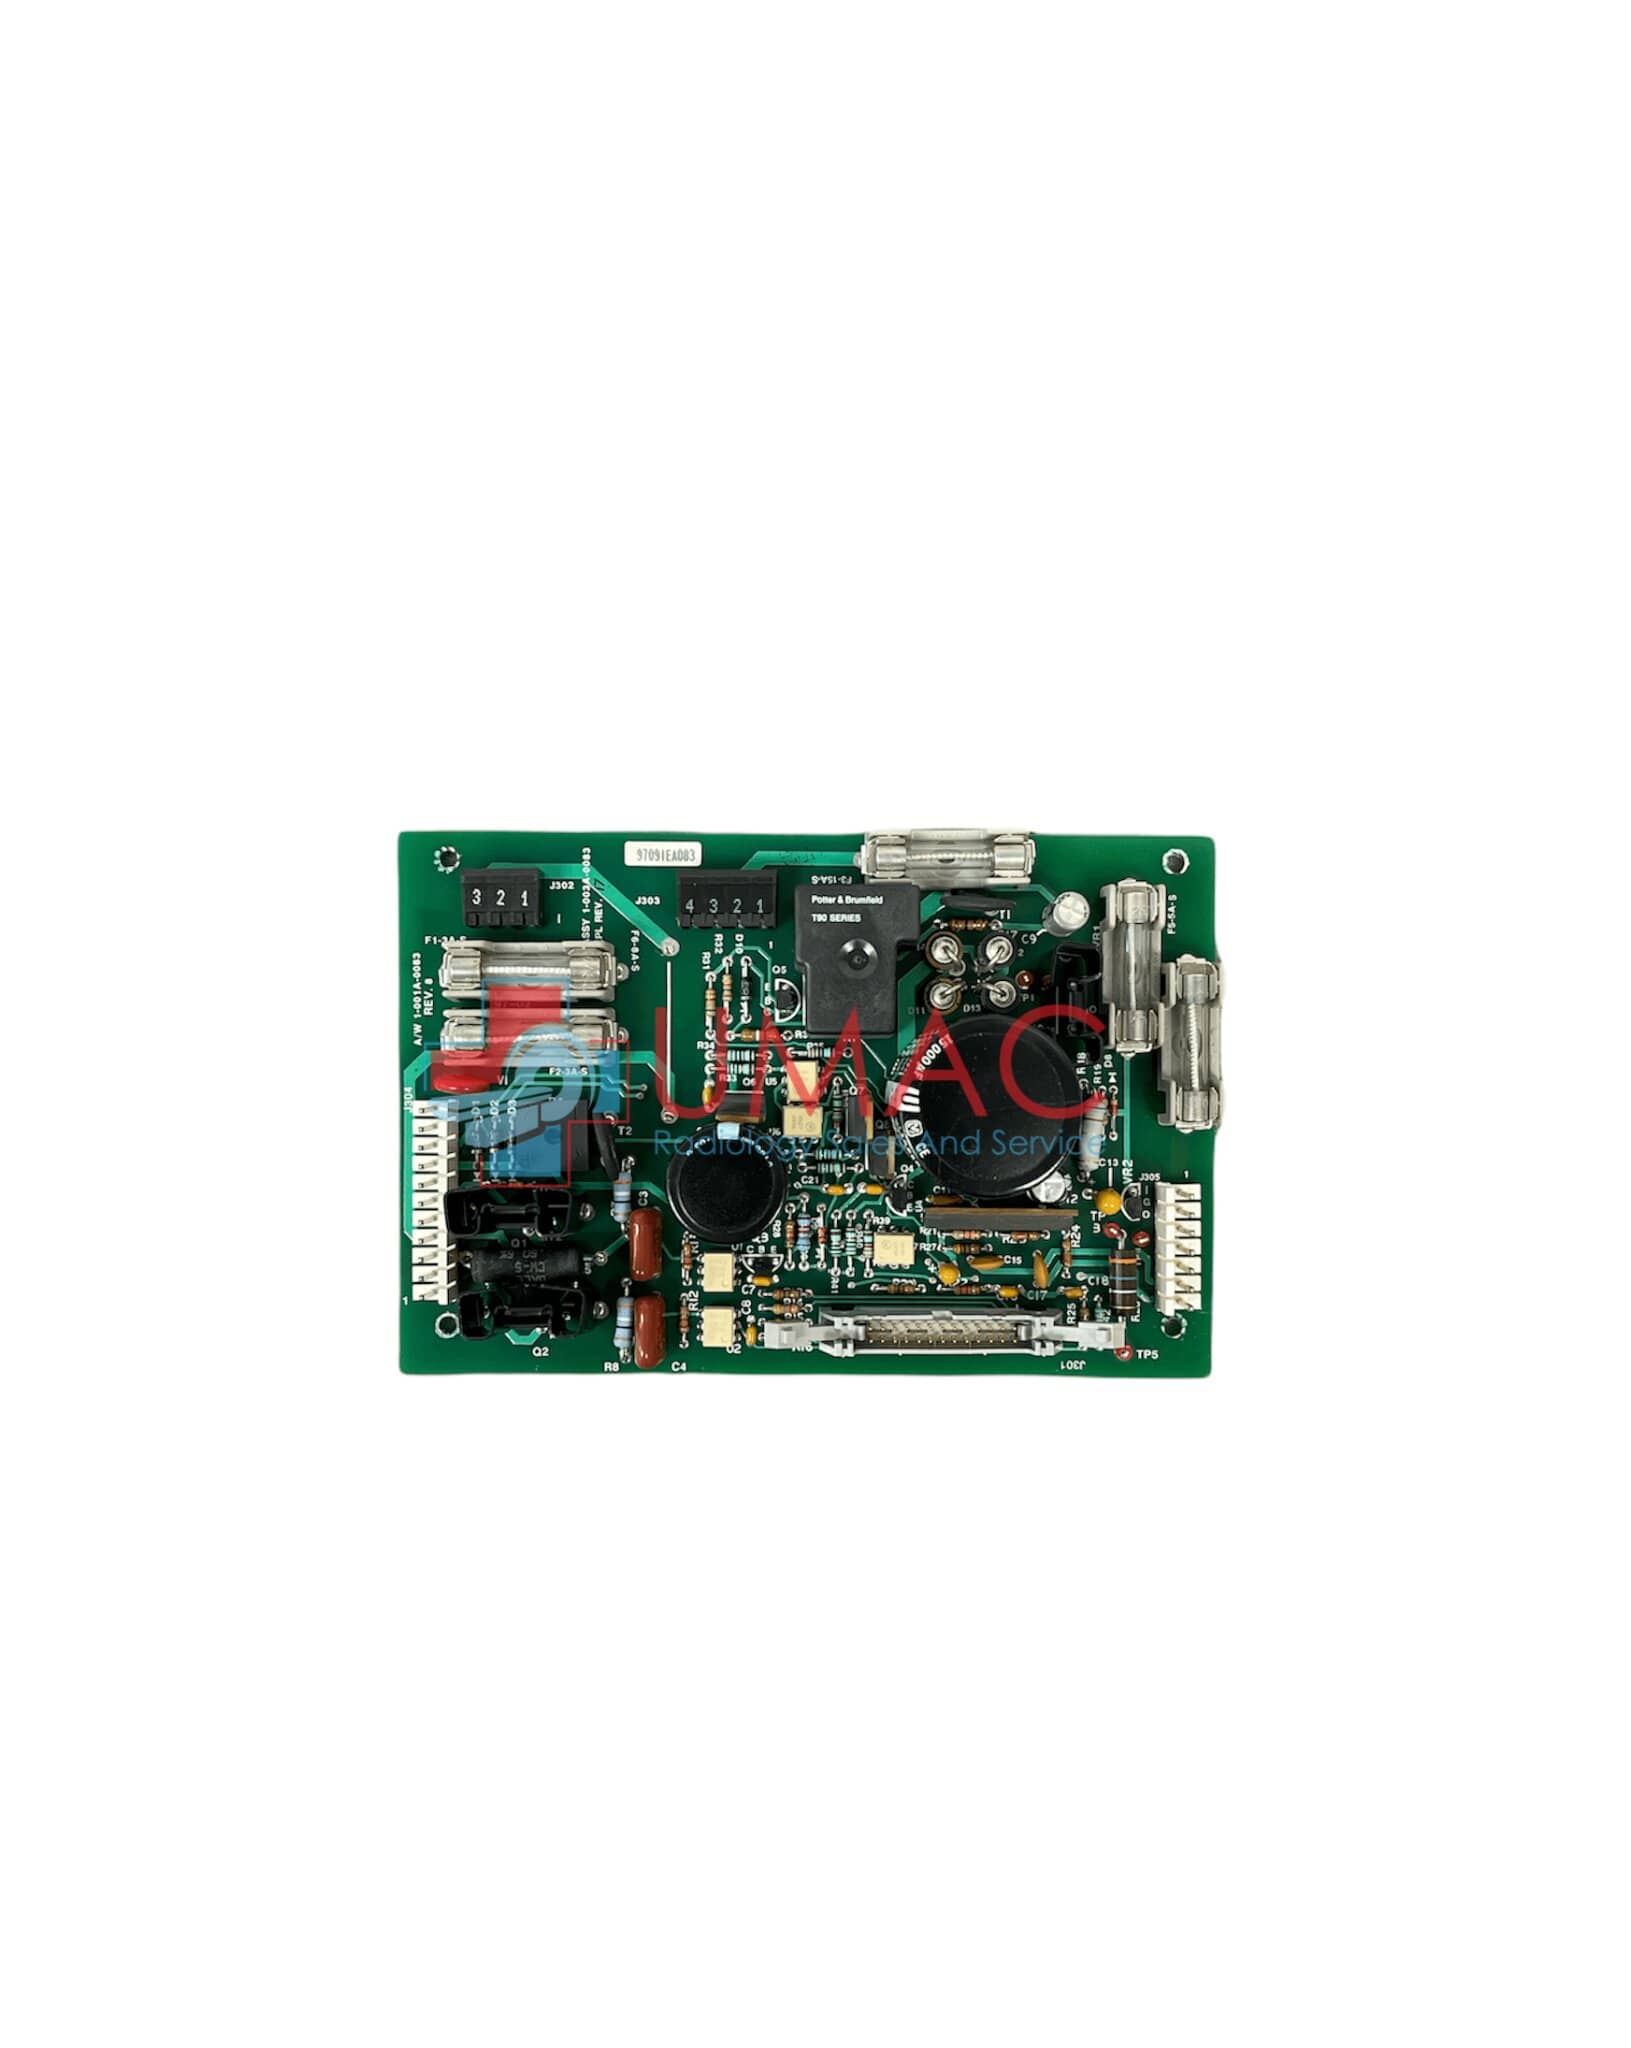 Hologic Lorad M-IV 1-003-0083 Power Control Board